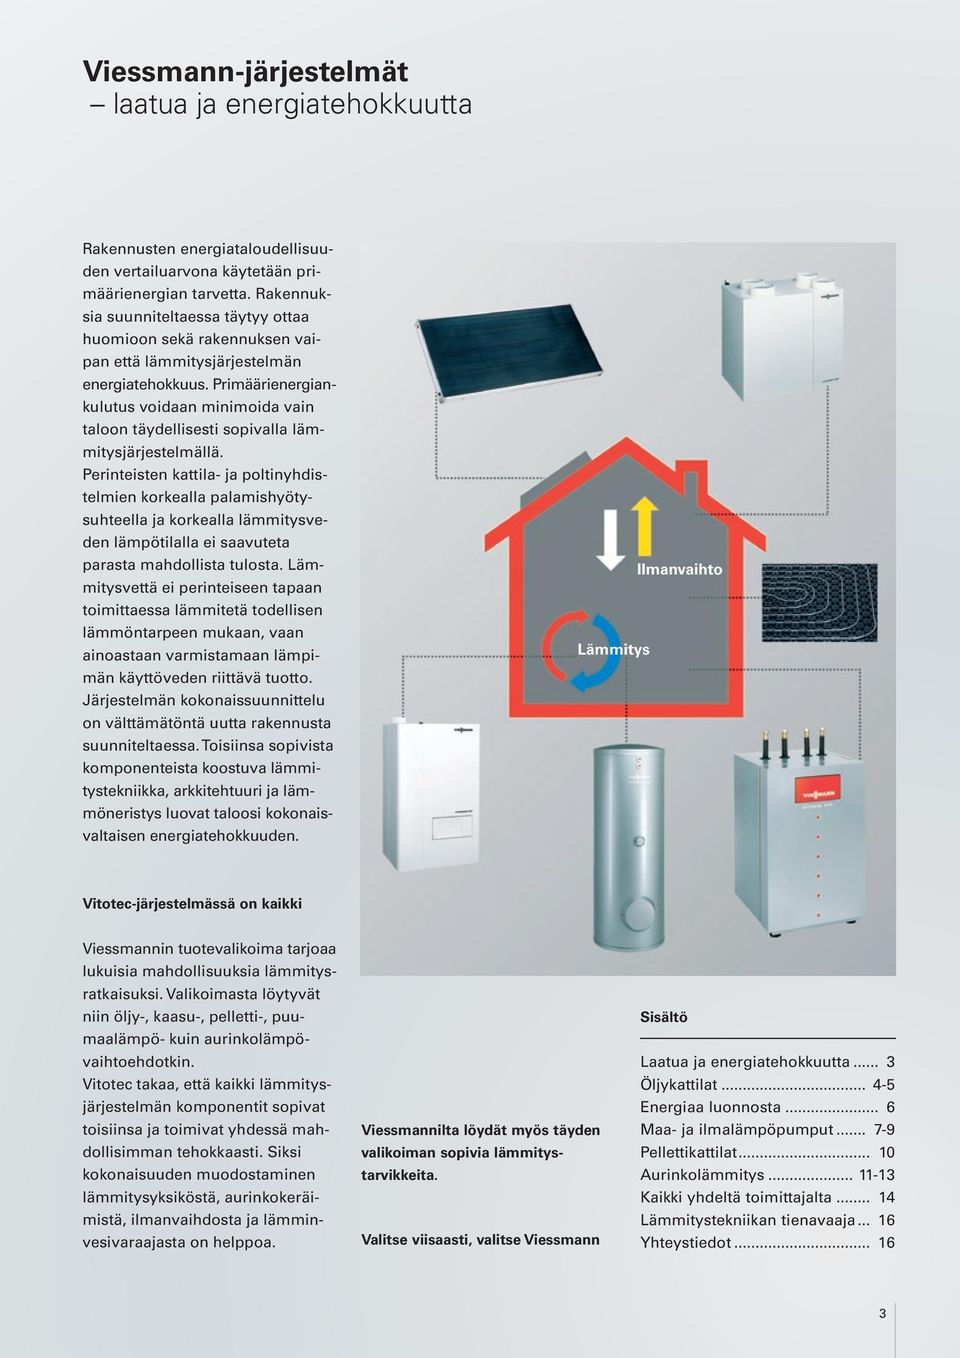 Primäärienergiankulutus voidaan minimoida vain taloon täydellisesti sopivalla lämmitysjärjestelmällä.